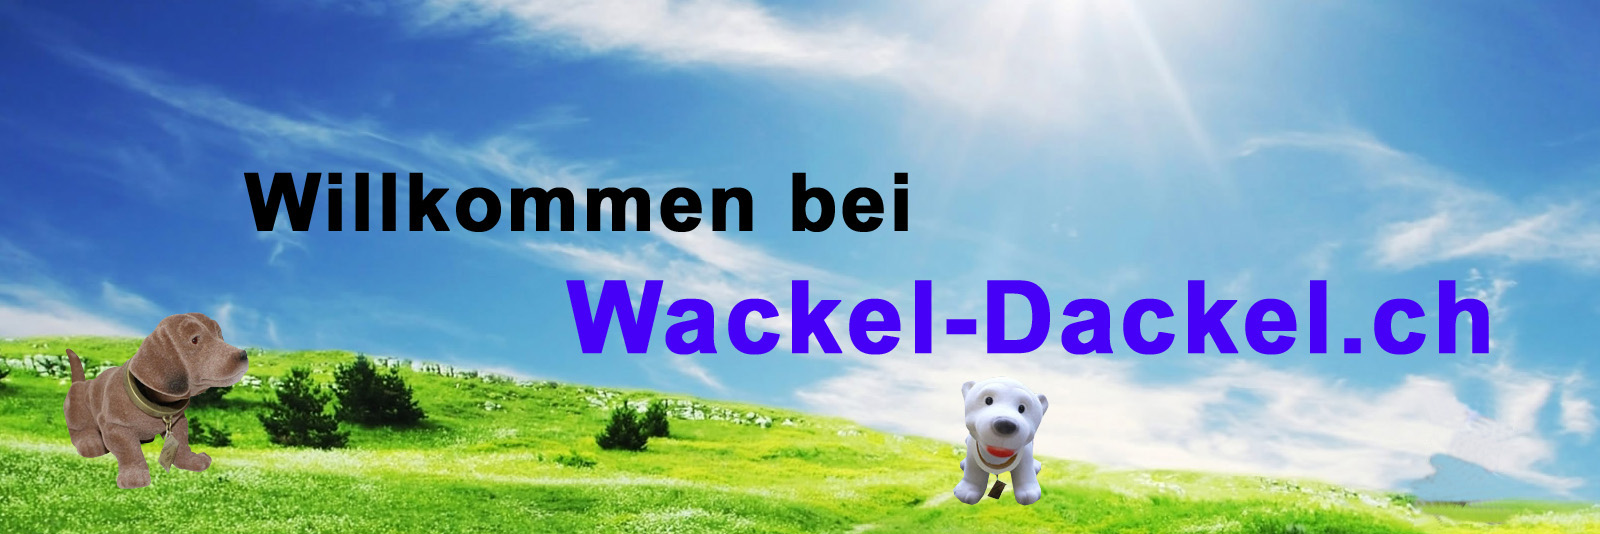 http://www.wackel-dackel.ch/images/s2dlogo.jpg